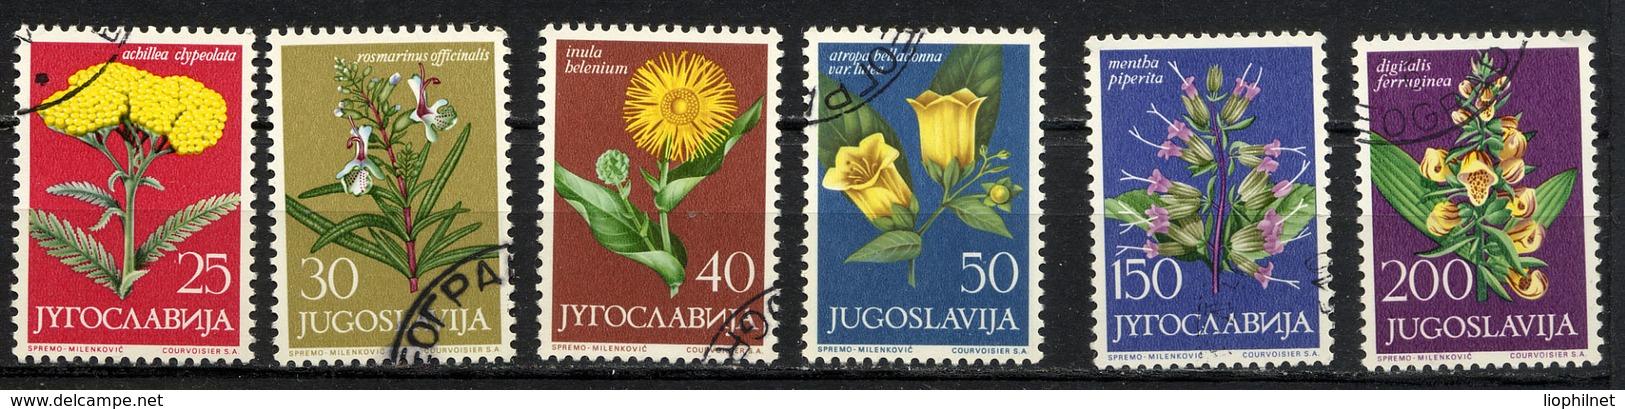 YOUGOSLAVIE JUGOSLAVIA 1965, Yvert 1013/18, FLORE MEDICINALE, 6 Valeurs, Oblitérés / Used. R034 - Heilpflanzen